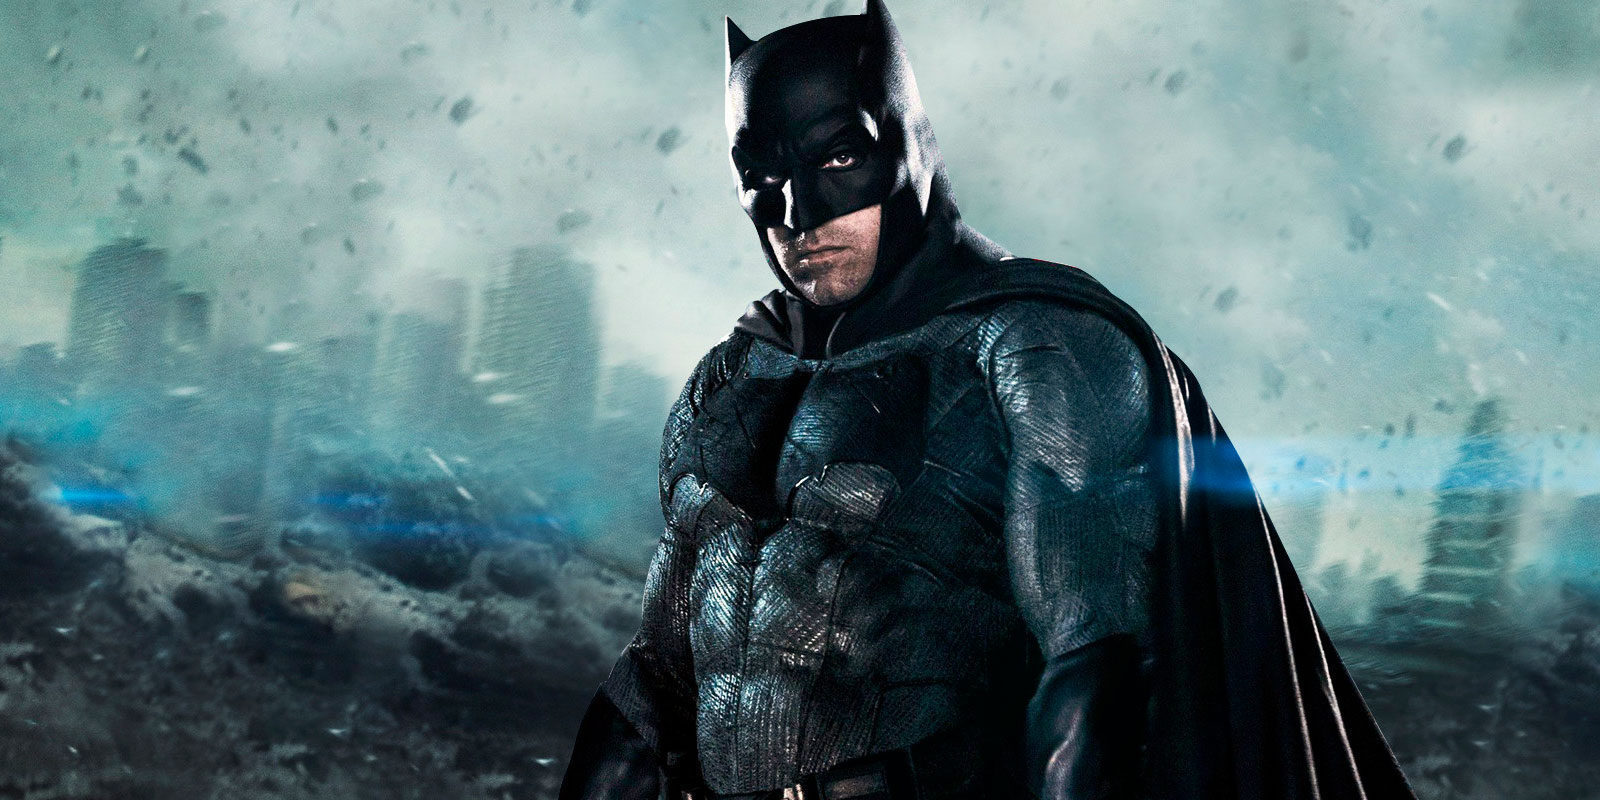 Warner Bros. confirma que no habrá cuatro películas sobre Batman y su universo